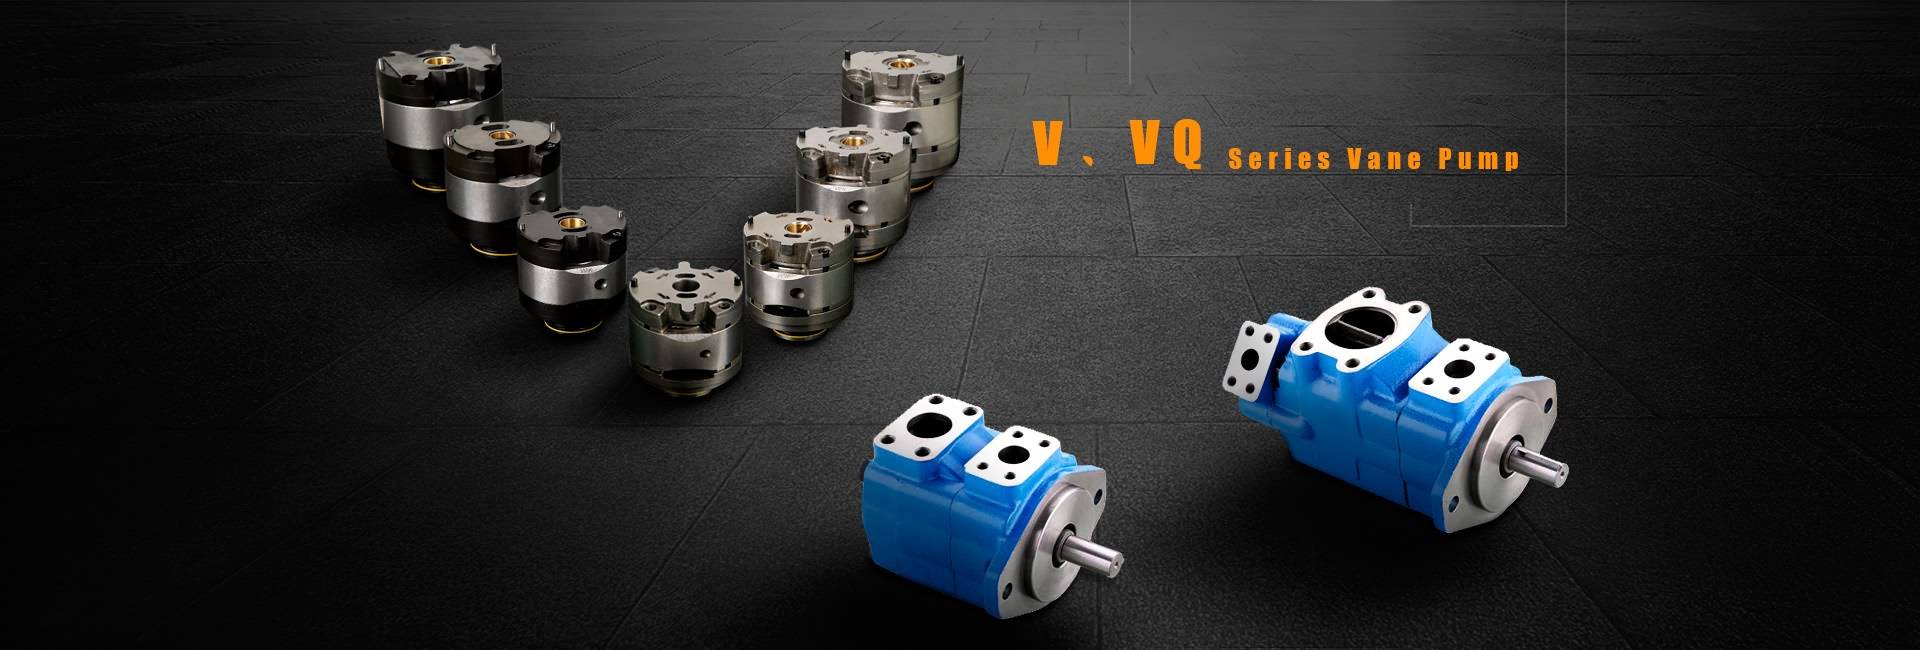 V, Pompa VQ Series Vane